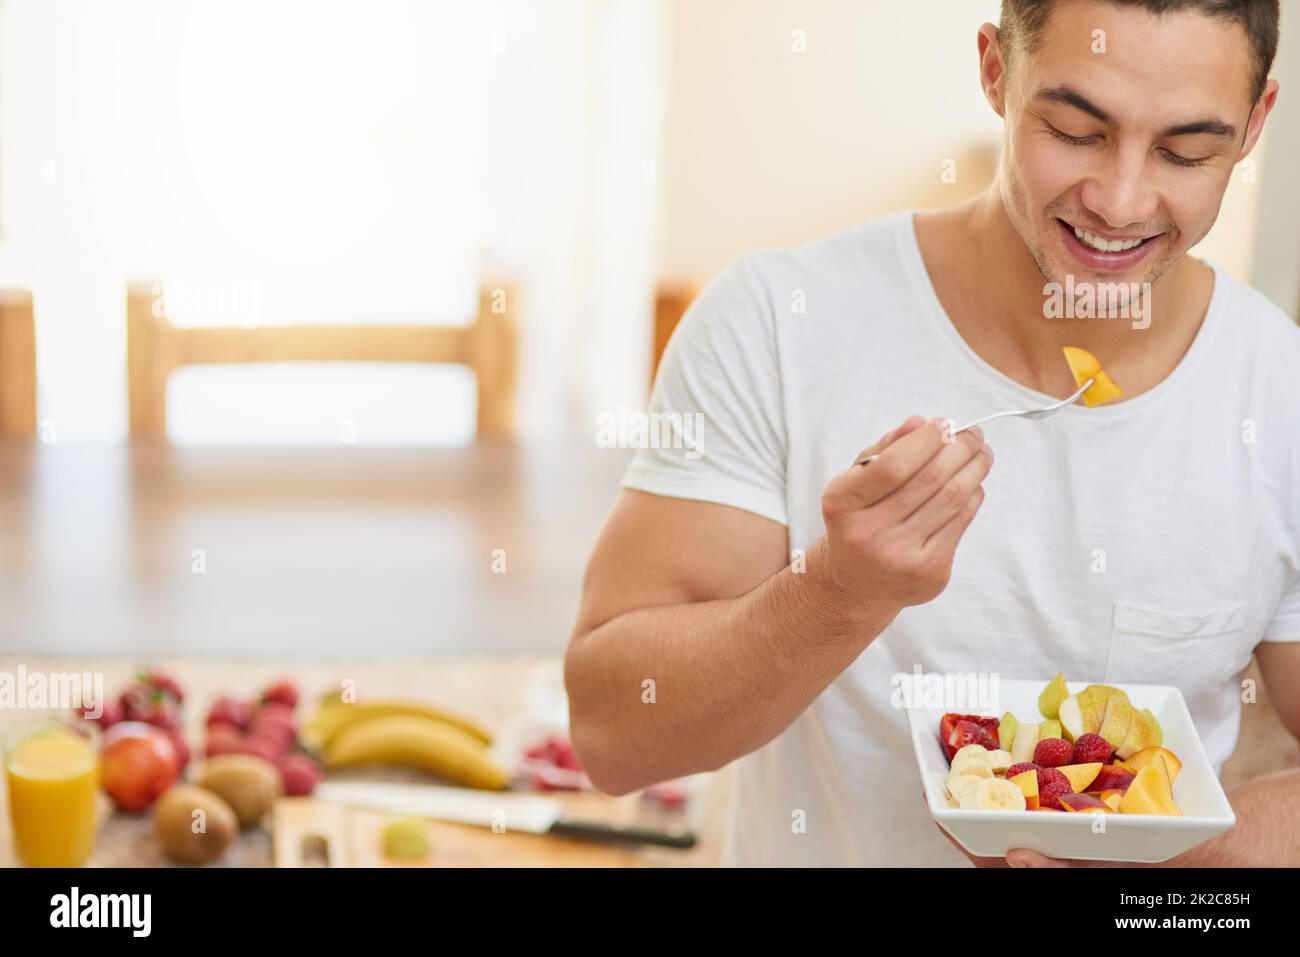 Rien de mieux que de se réveiller avec un petit déjeuner sain. Prise de vue d'un jeune homme en train de manger une salade de fruits. Banque D'Images